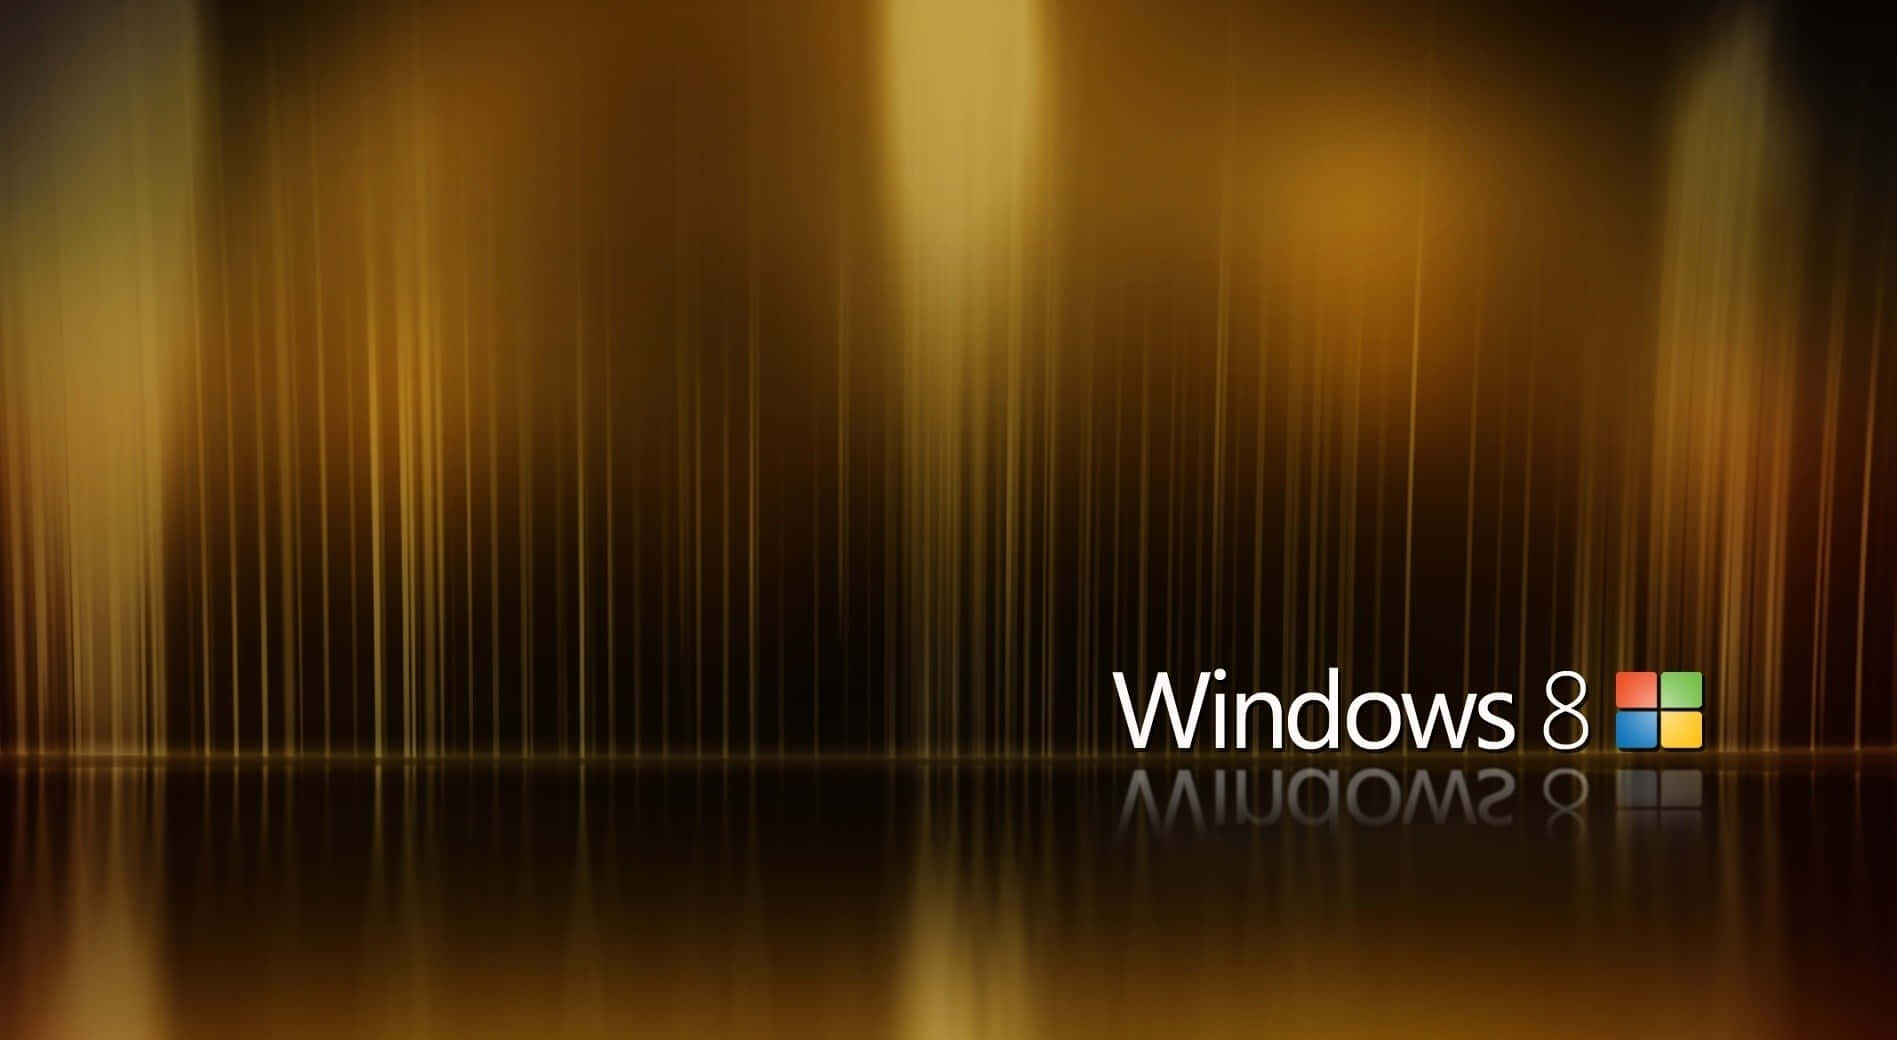 Windows8 Hintergrund Mit Einer Auflösung Von 1897 X 1040